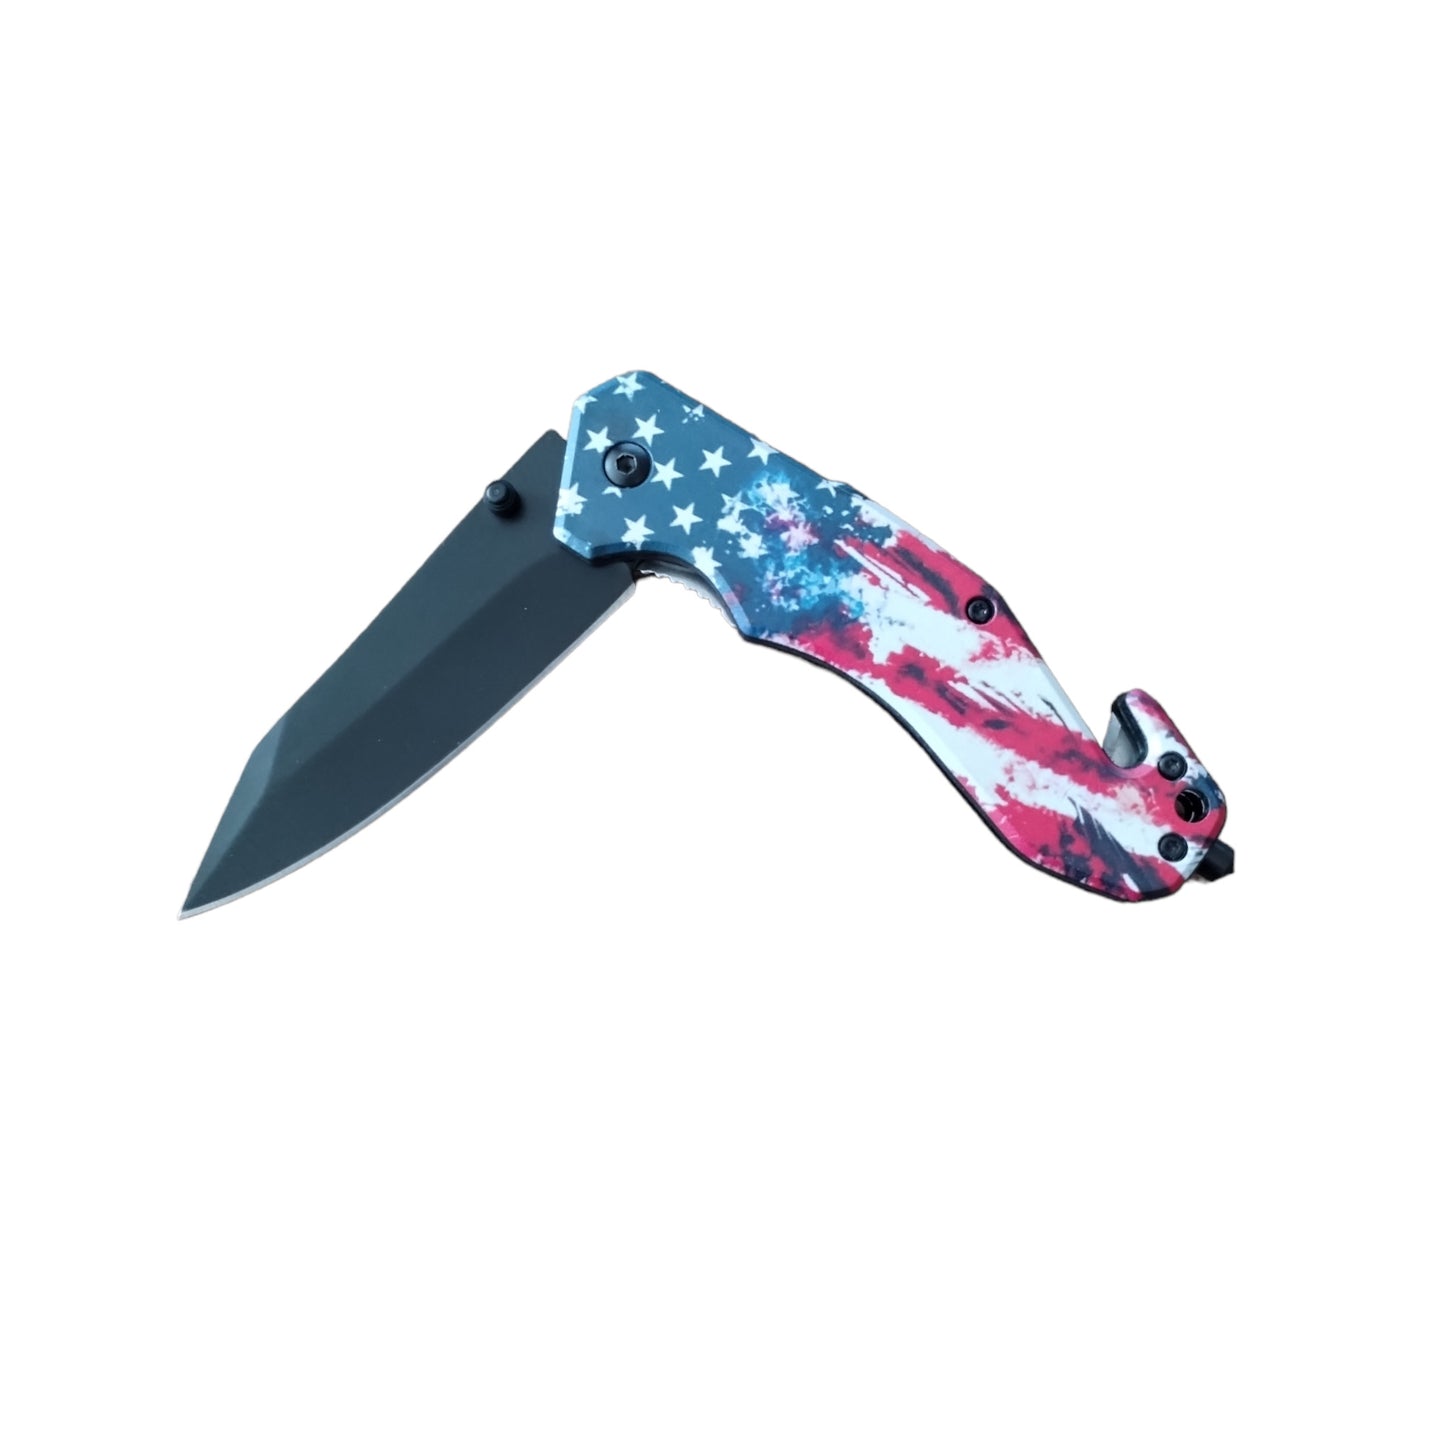 American Knife